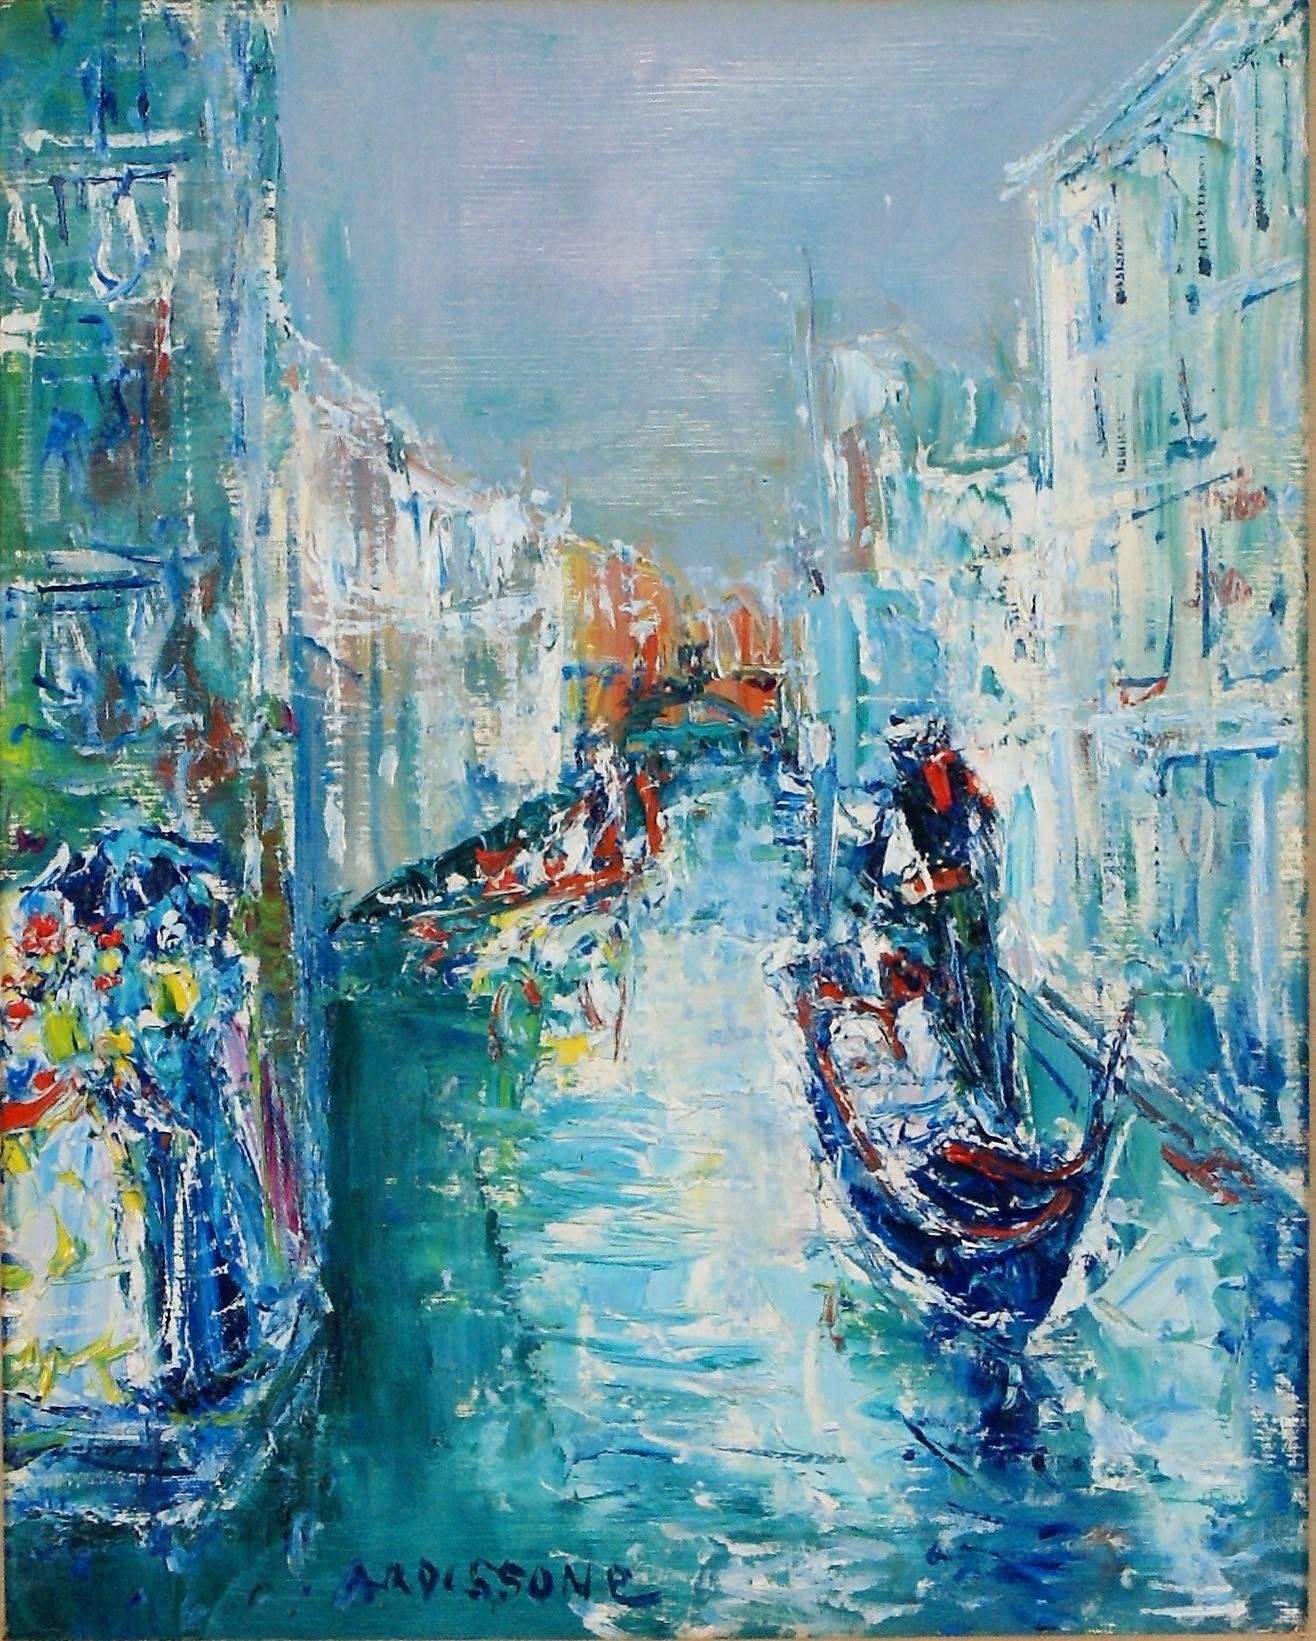  Promenade en Gondole (Gondola Ride) - Painting by Yolande Ardissone